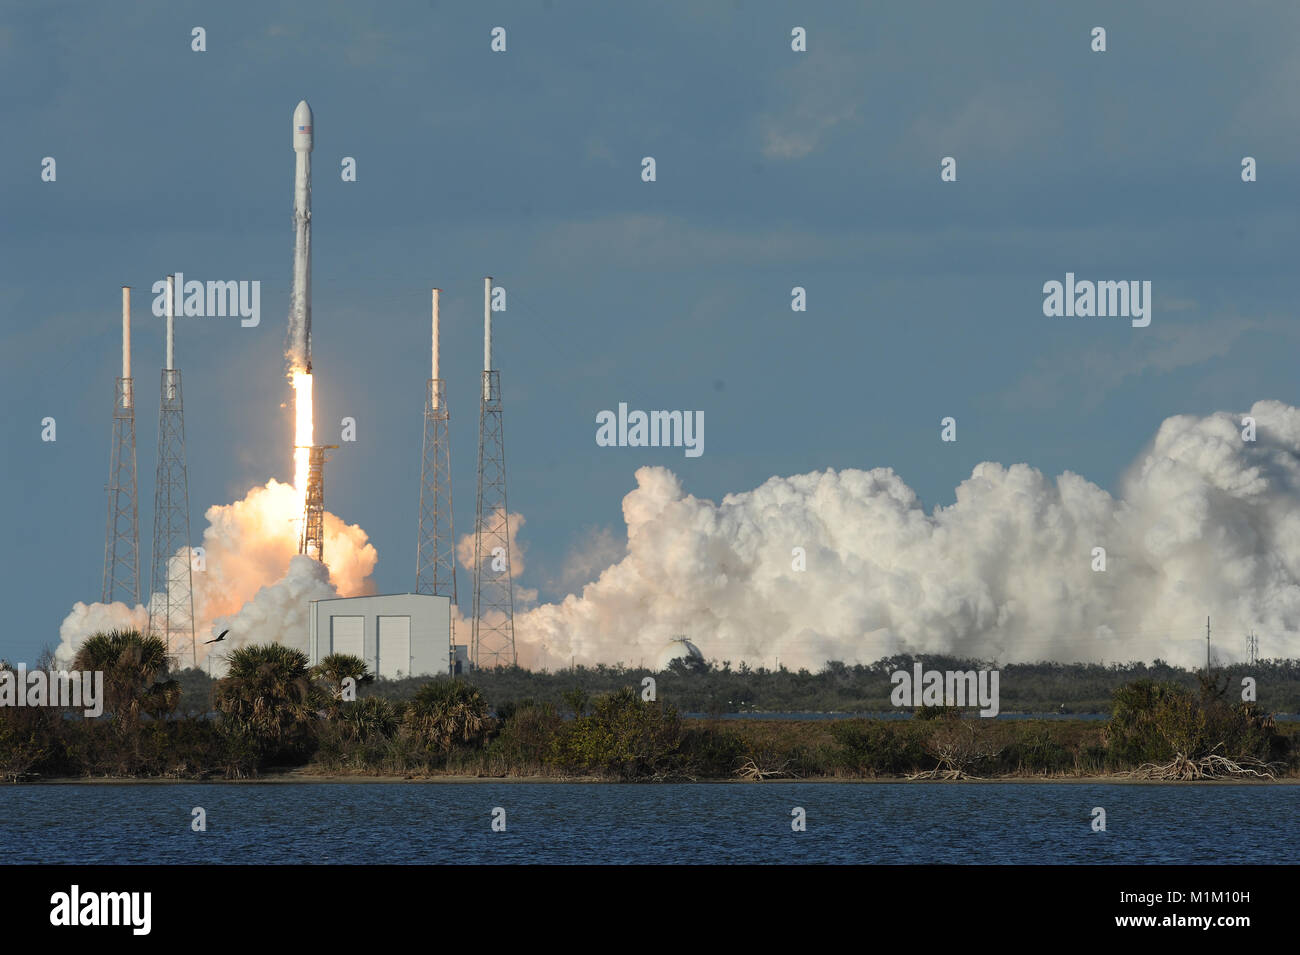 Cabo Cañaveral, Florida, Estados Unidos. 31 ene, 2018. SpaceX lanza un cohete Falcon 9 llevando el satélite de comunicaciones GovSat-1 en una empresa conjunta por el Gobierno de Luxemburgo y SES, uno de los mayores operadores de satélites comerciales, con sede en Luxemburgo. Crédito: Paul Hennessy/Alamy Live News Foto de stock